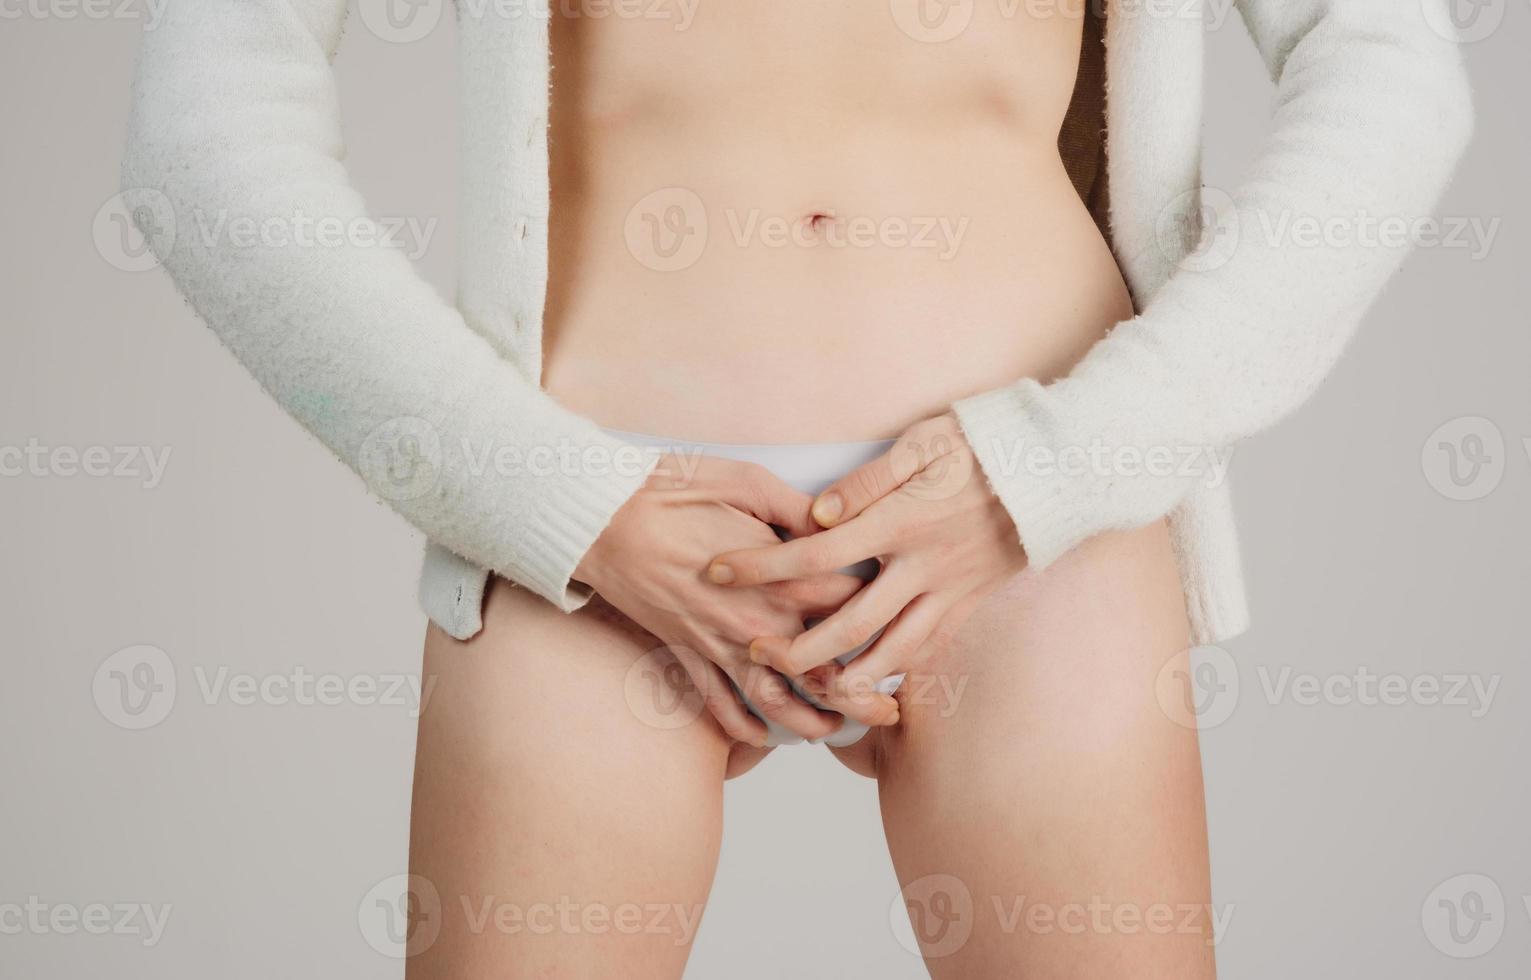 ung skön kvinna i smärtsam uttryck innehav henne mage lidande menstruations- period smärta liggande ledsen på Hem säng har mage kramp i kvinna hälsa begrepp foto